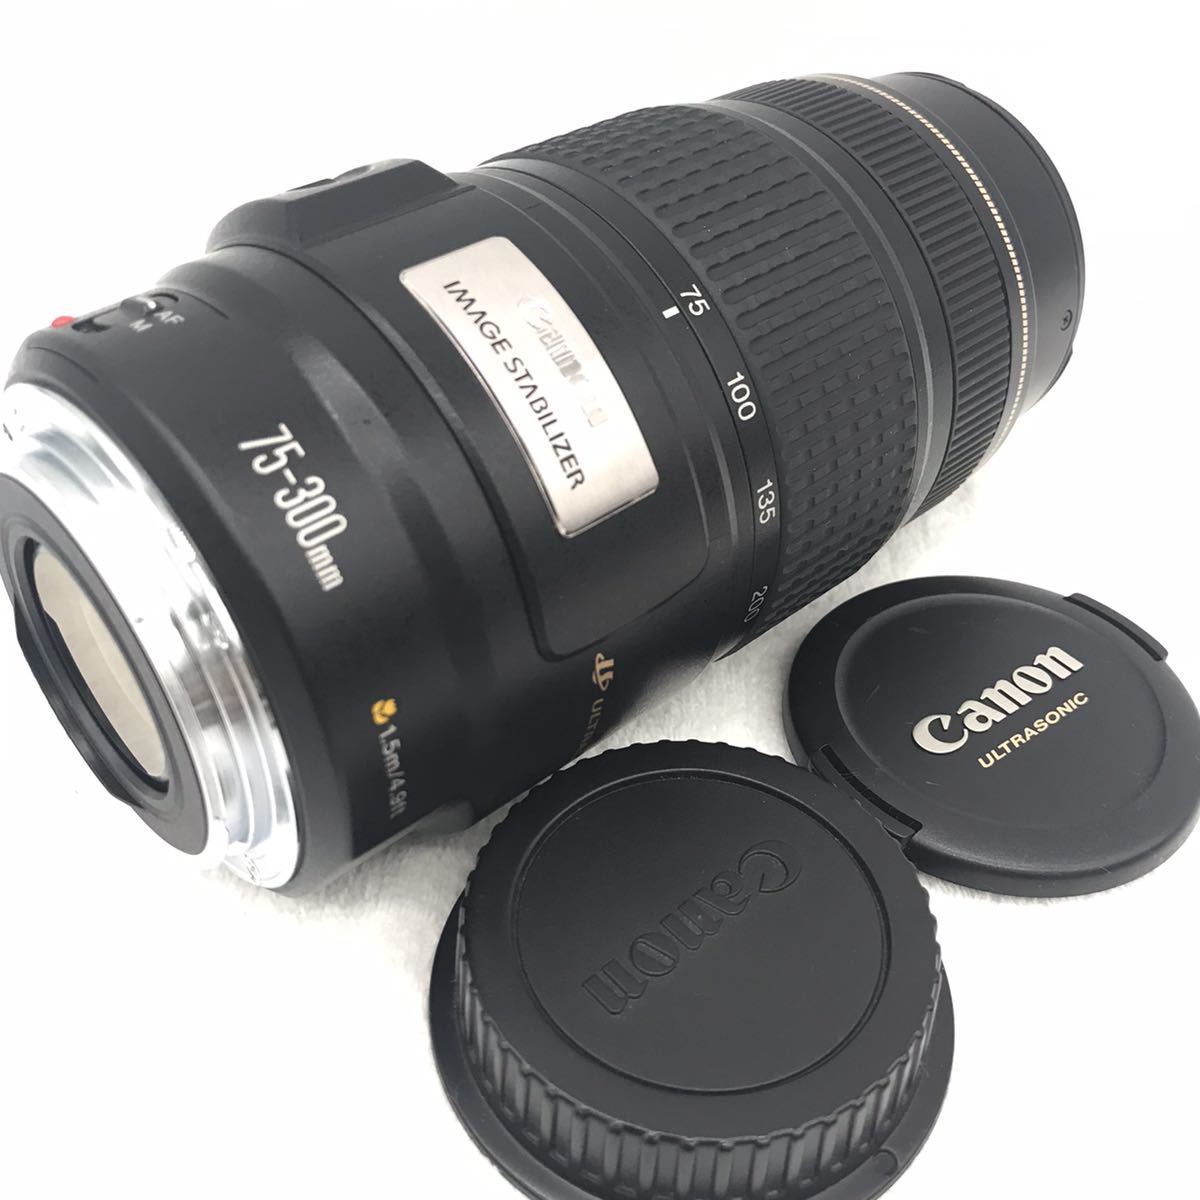 動作OK手ぶれ補正付望遠レンズ Canon EF75-300mm IS USM bpbd